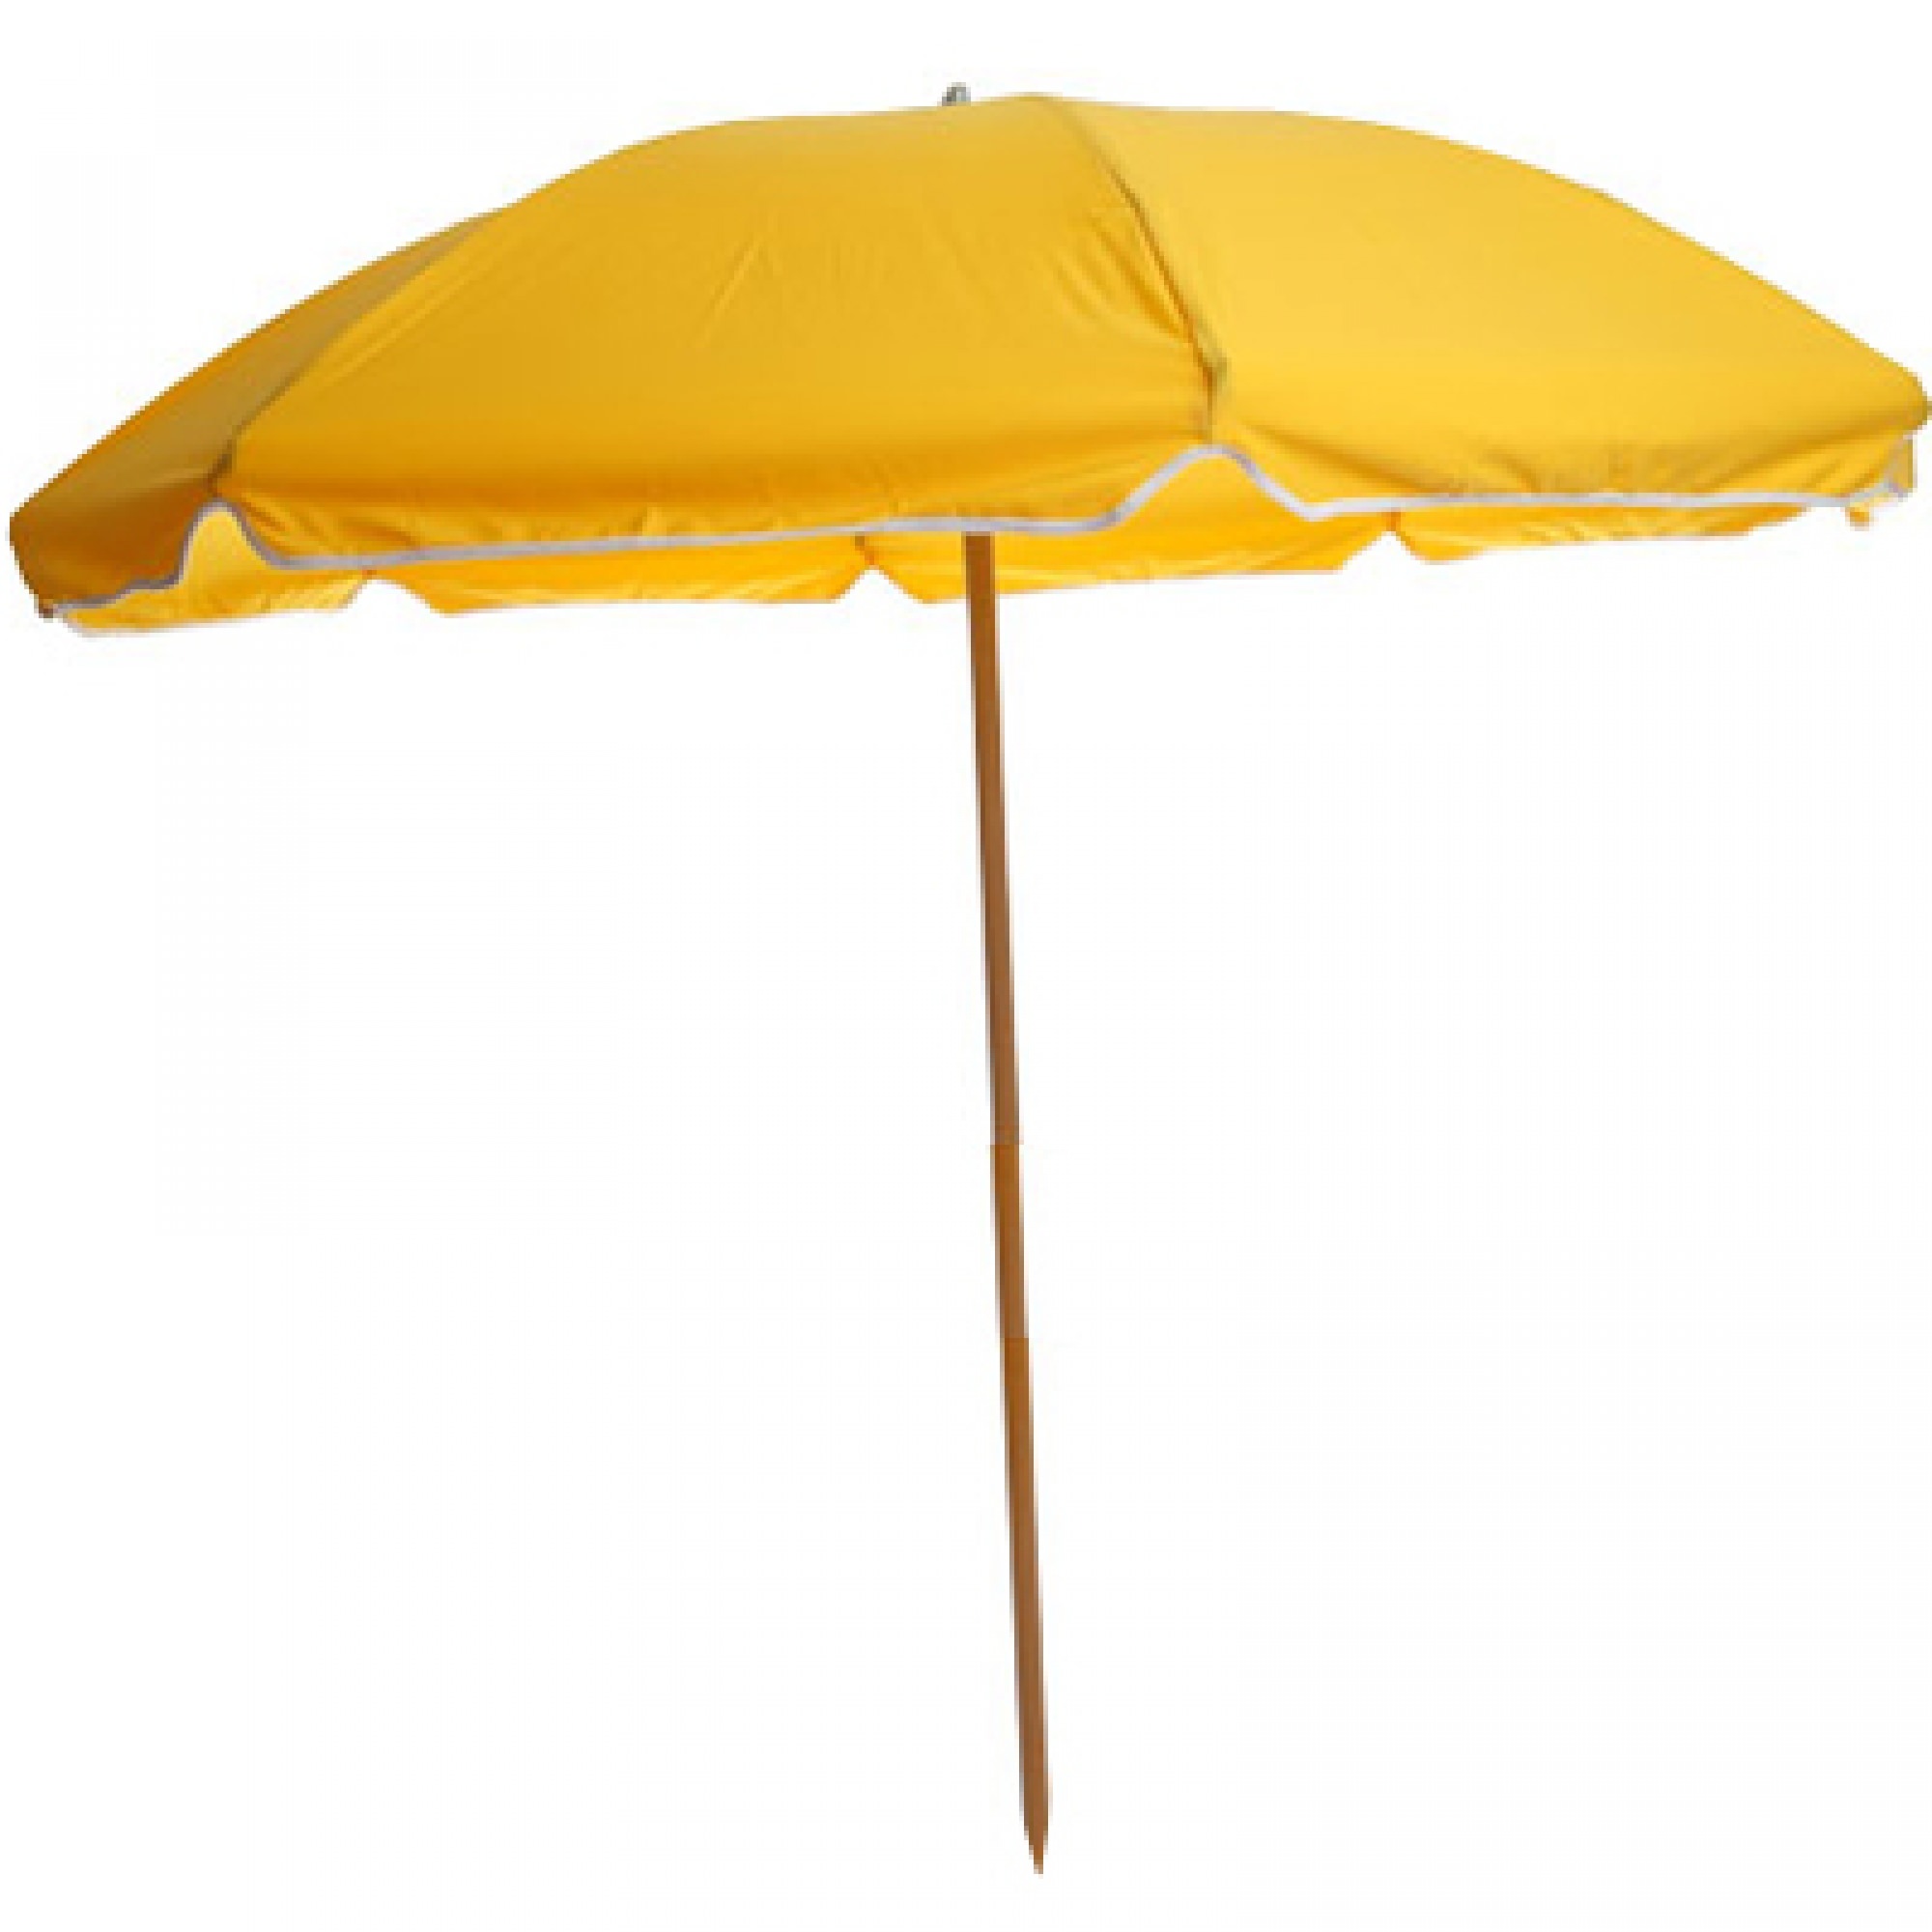 Umbrella - Yellow | Frankford Umbrellas | SKU: 845WY | Umbrellas